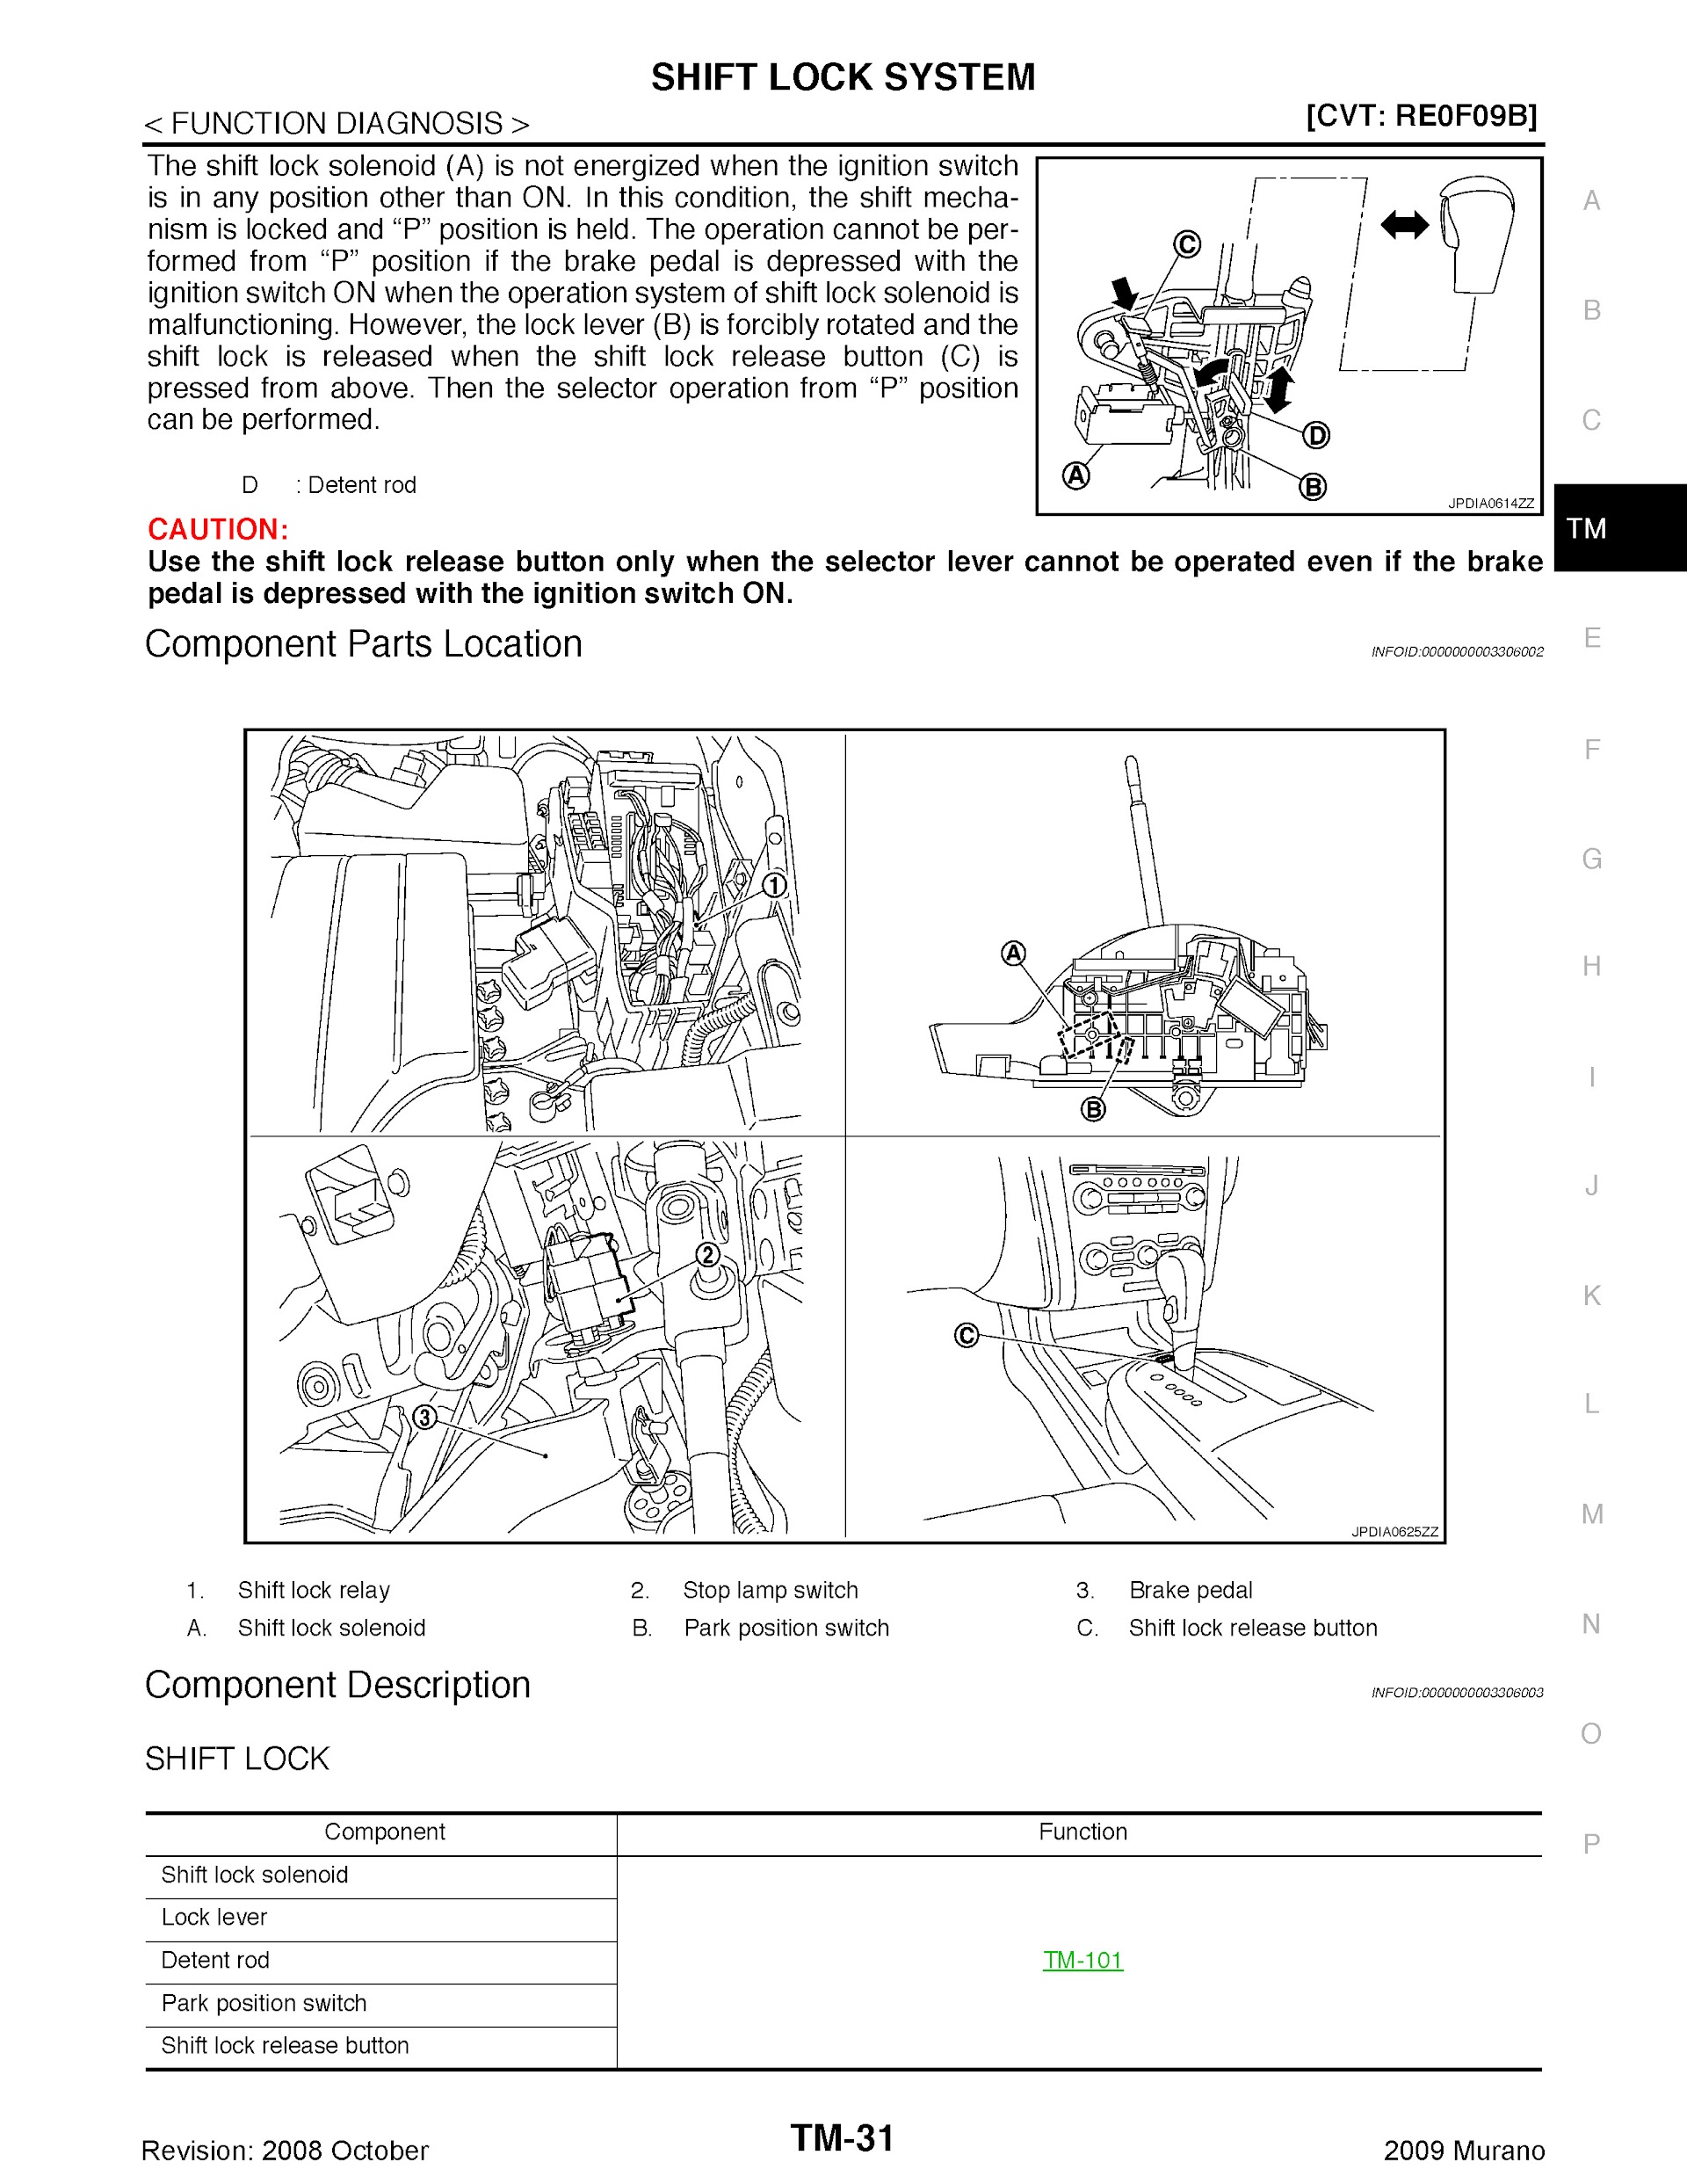 2009 Nissan Murano Repair Manual, Shaft Lock System